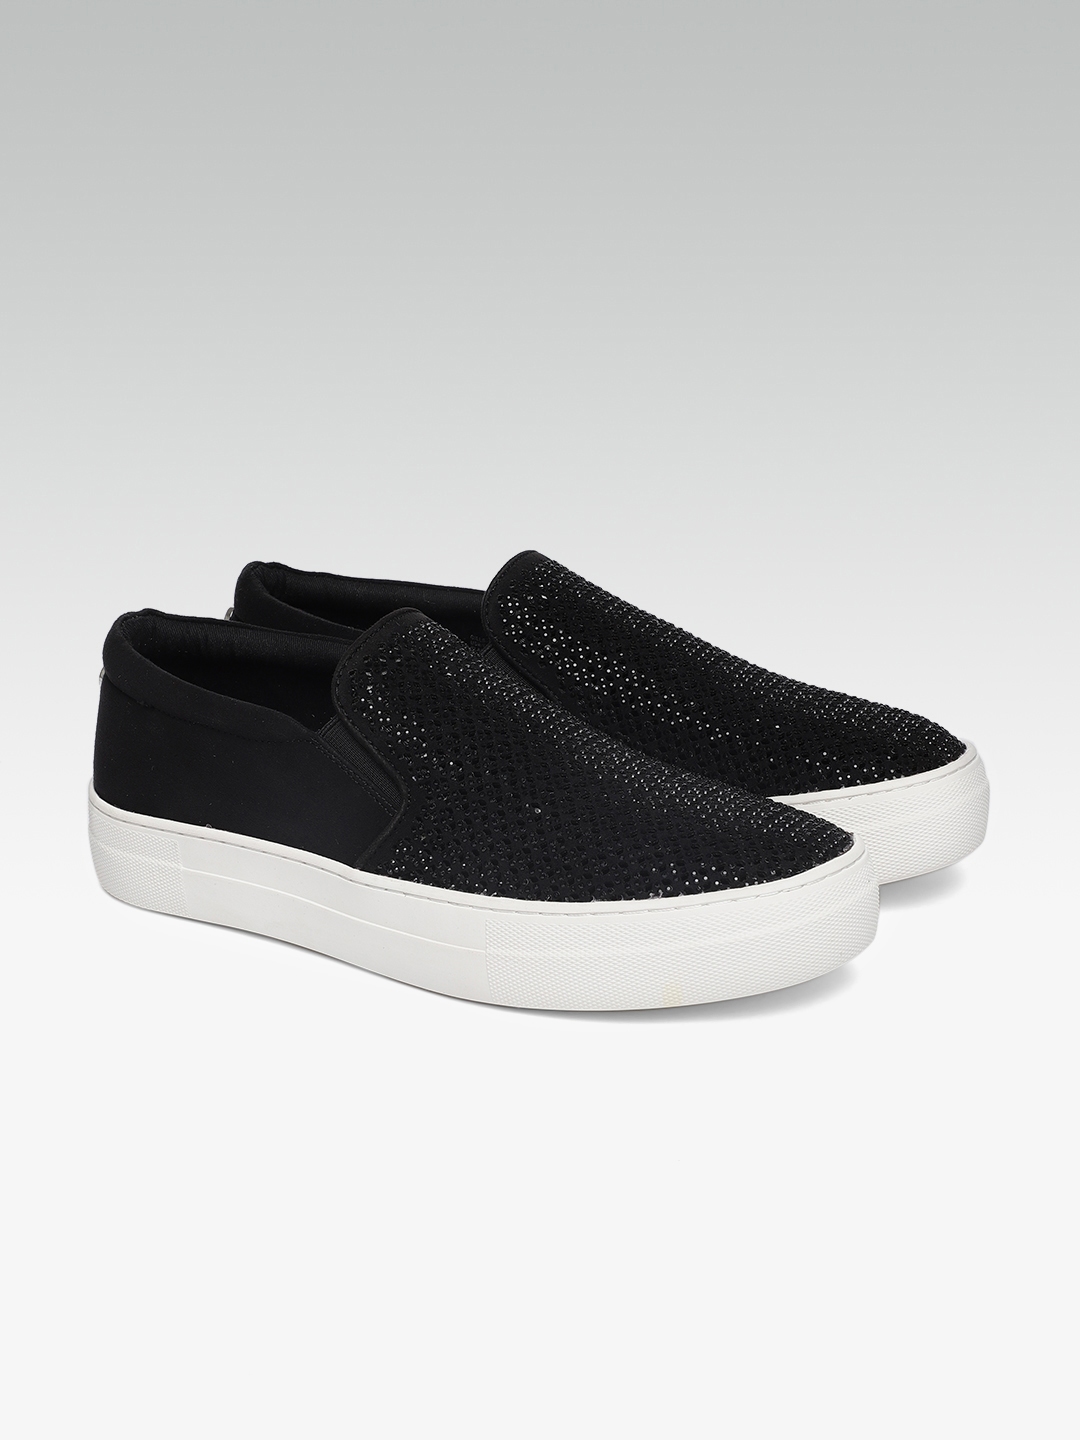 Buy Steve Madden Women Black Embellished Slip On Sneakers - Casual Shoes Women 6124994 | Myntra